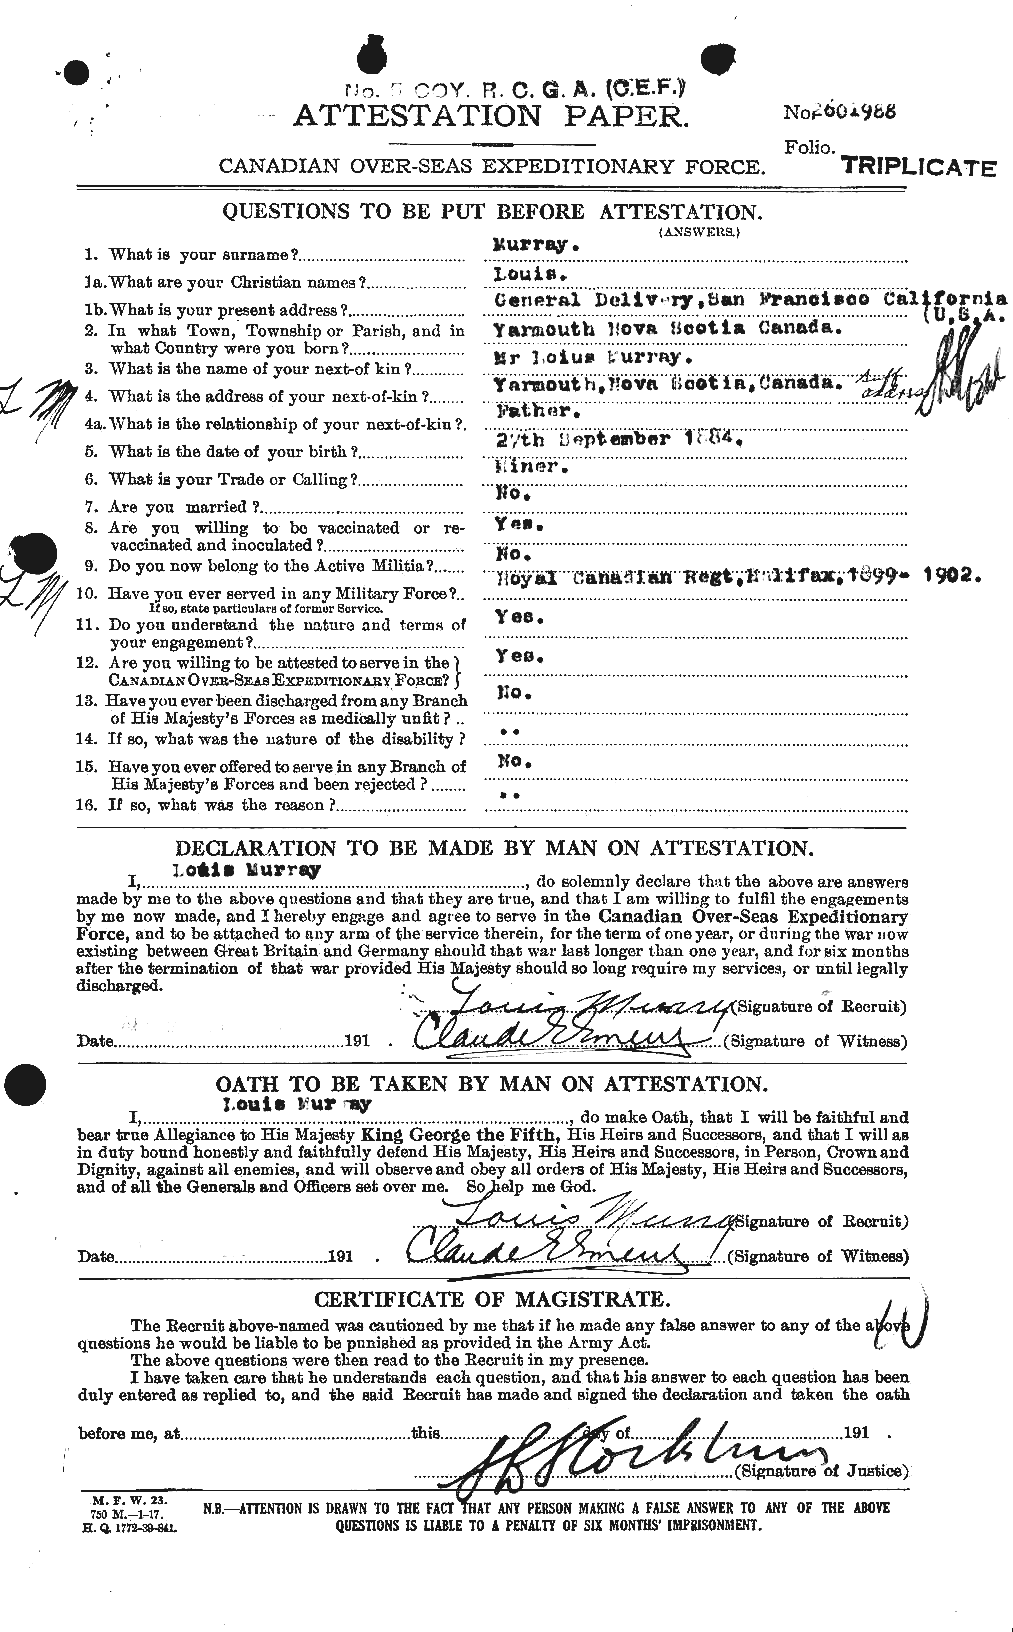 Dossiers du Personnel de la Première Guerre mondiale - CEC 518707a